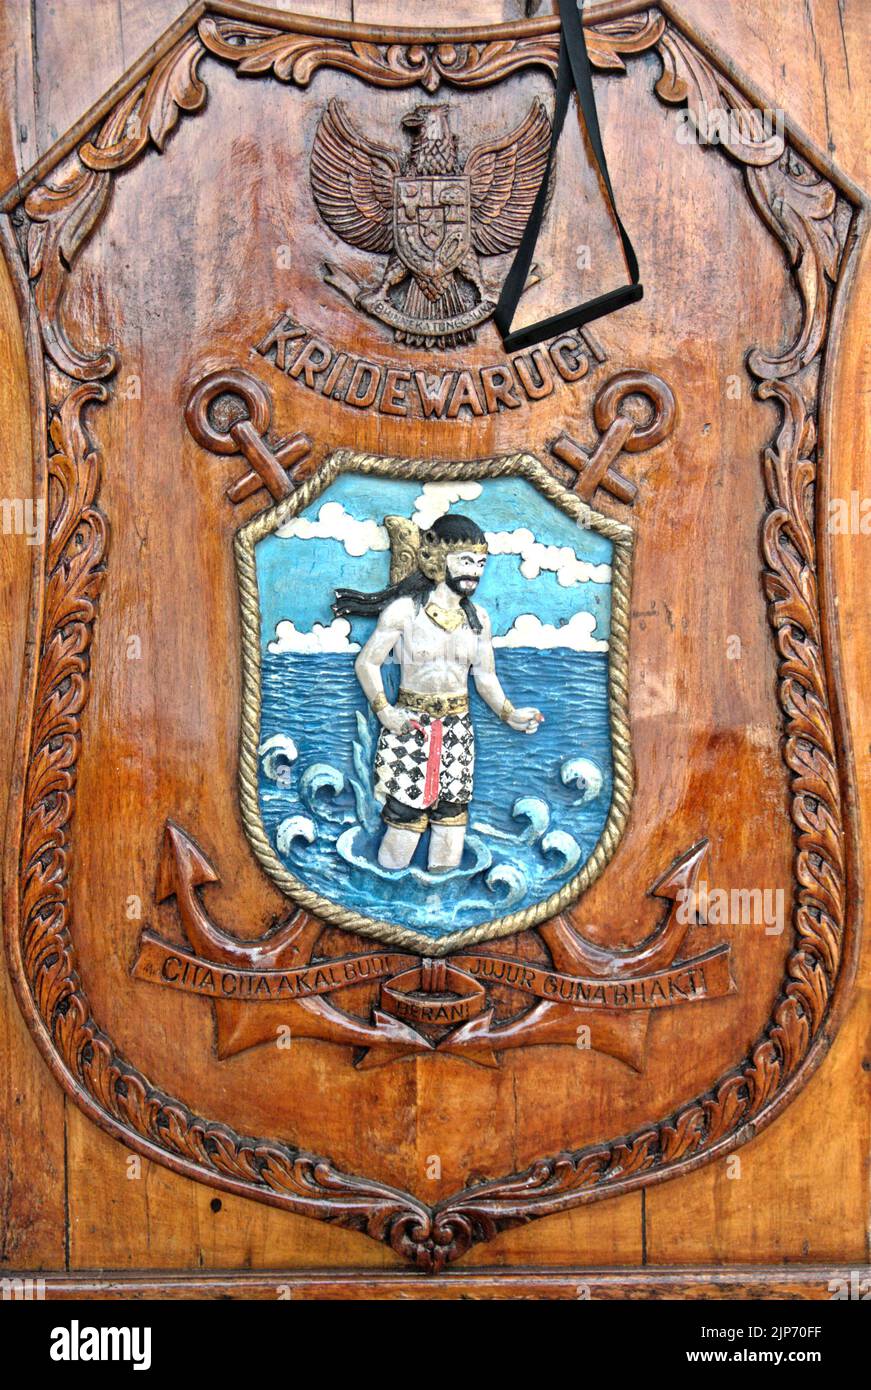 Une image de Bhima, l'un des frères Pandava, est vue sur une bannière debout placée sur la plate-forme du port, comme KRI Dewaruci (Dewa Ruci), un grand navire indonésien, comme la goélette de type barquentine est ouverte aux visiteurs publics au port de Kolinlamil (port de la Marine) à Tanjung Priok, dans le nord de Jakarta, Indonésie. Bhima est un symbole du grand navire de la marine indonésienne. Banque D'Images